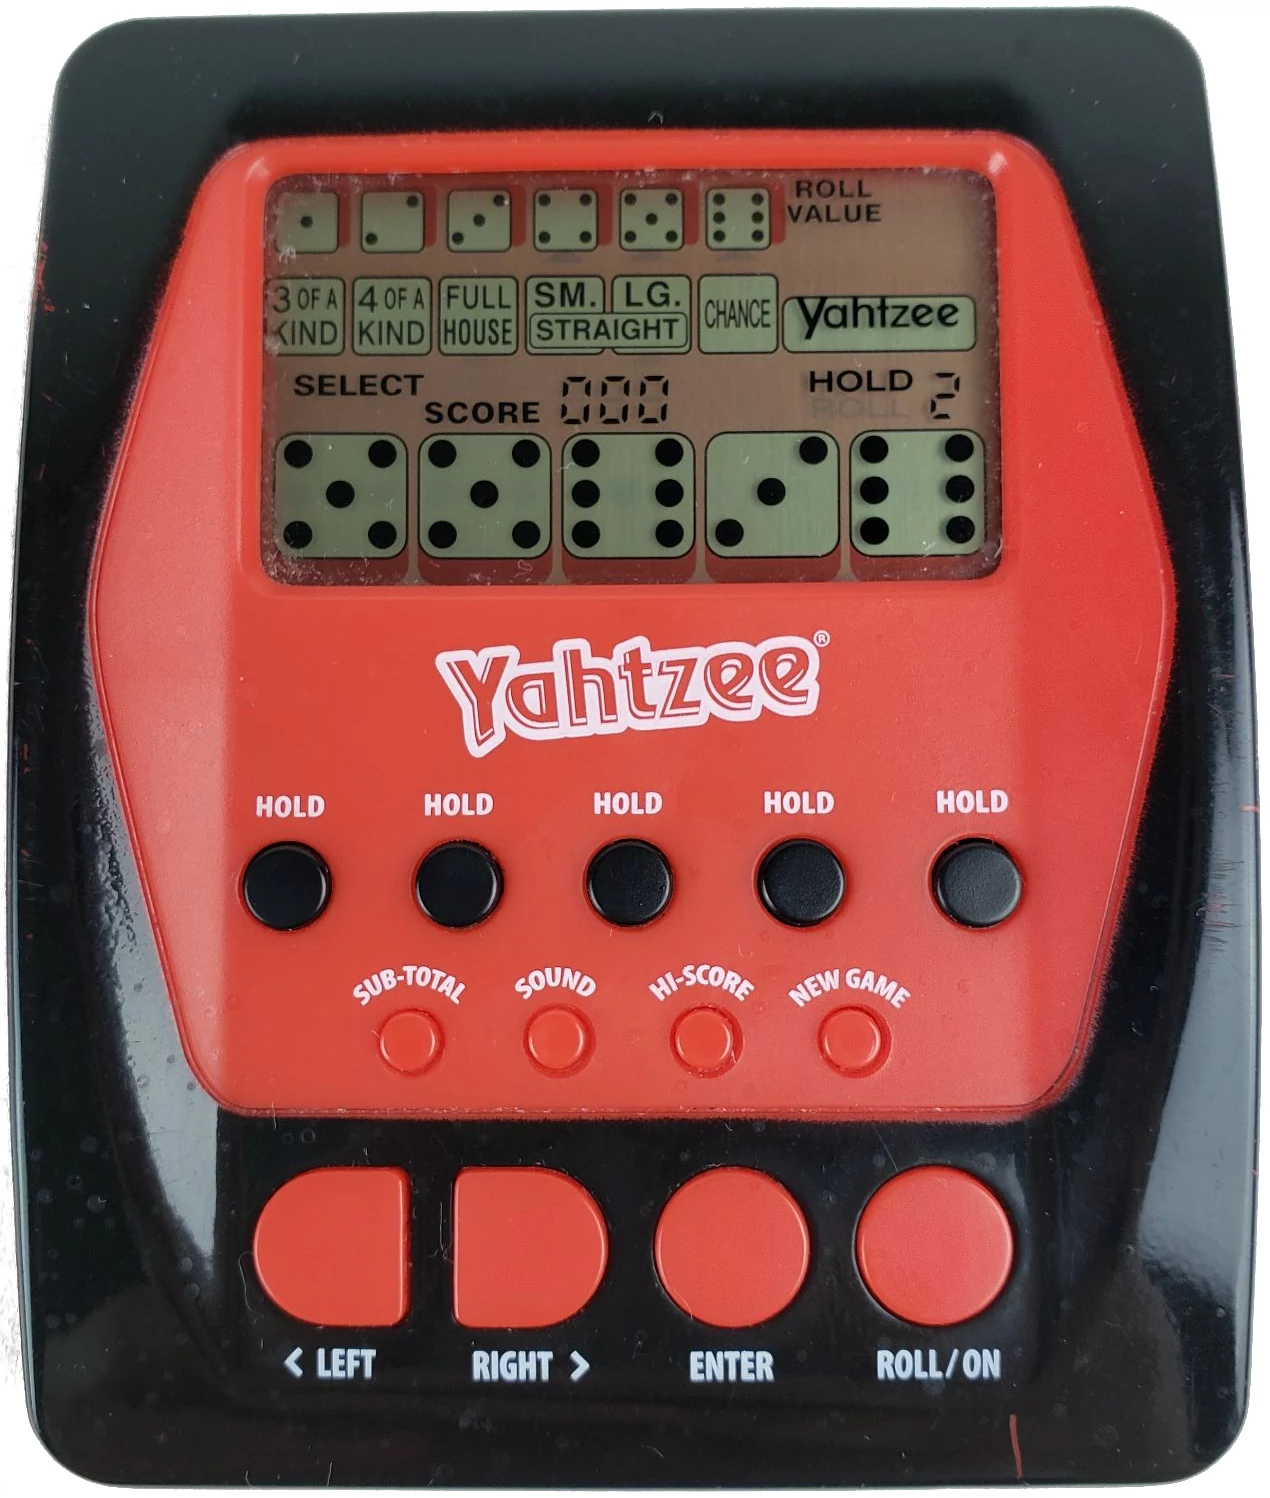 2012 electronic handheld Yahtzee game